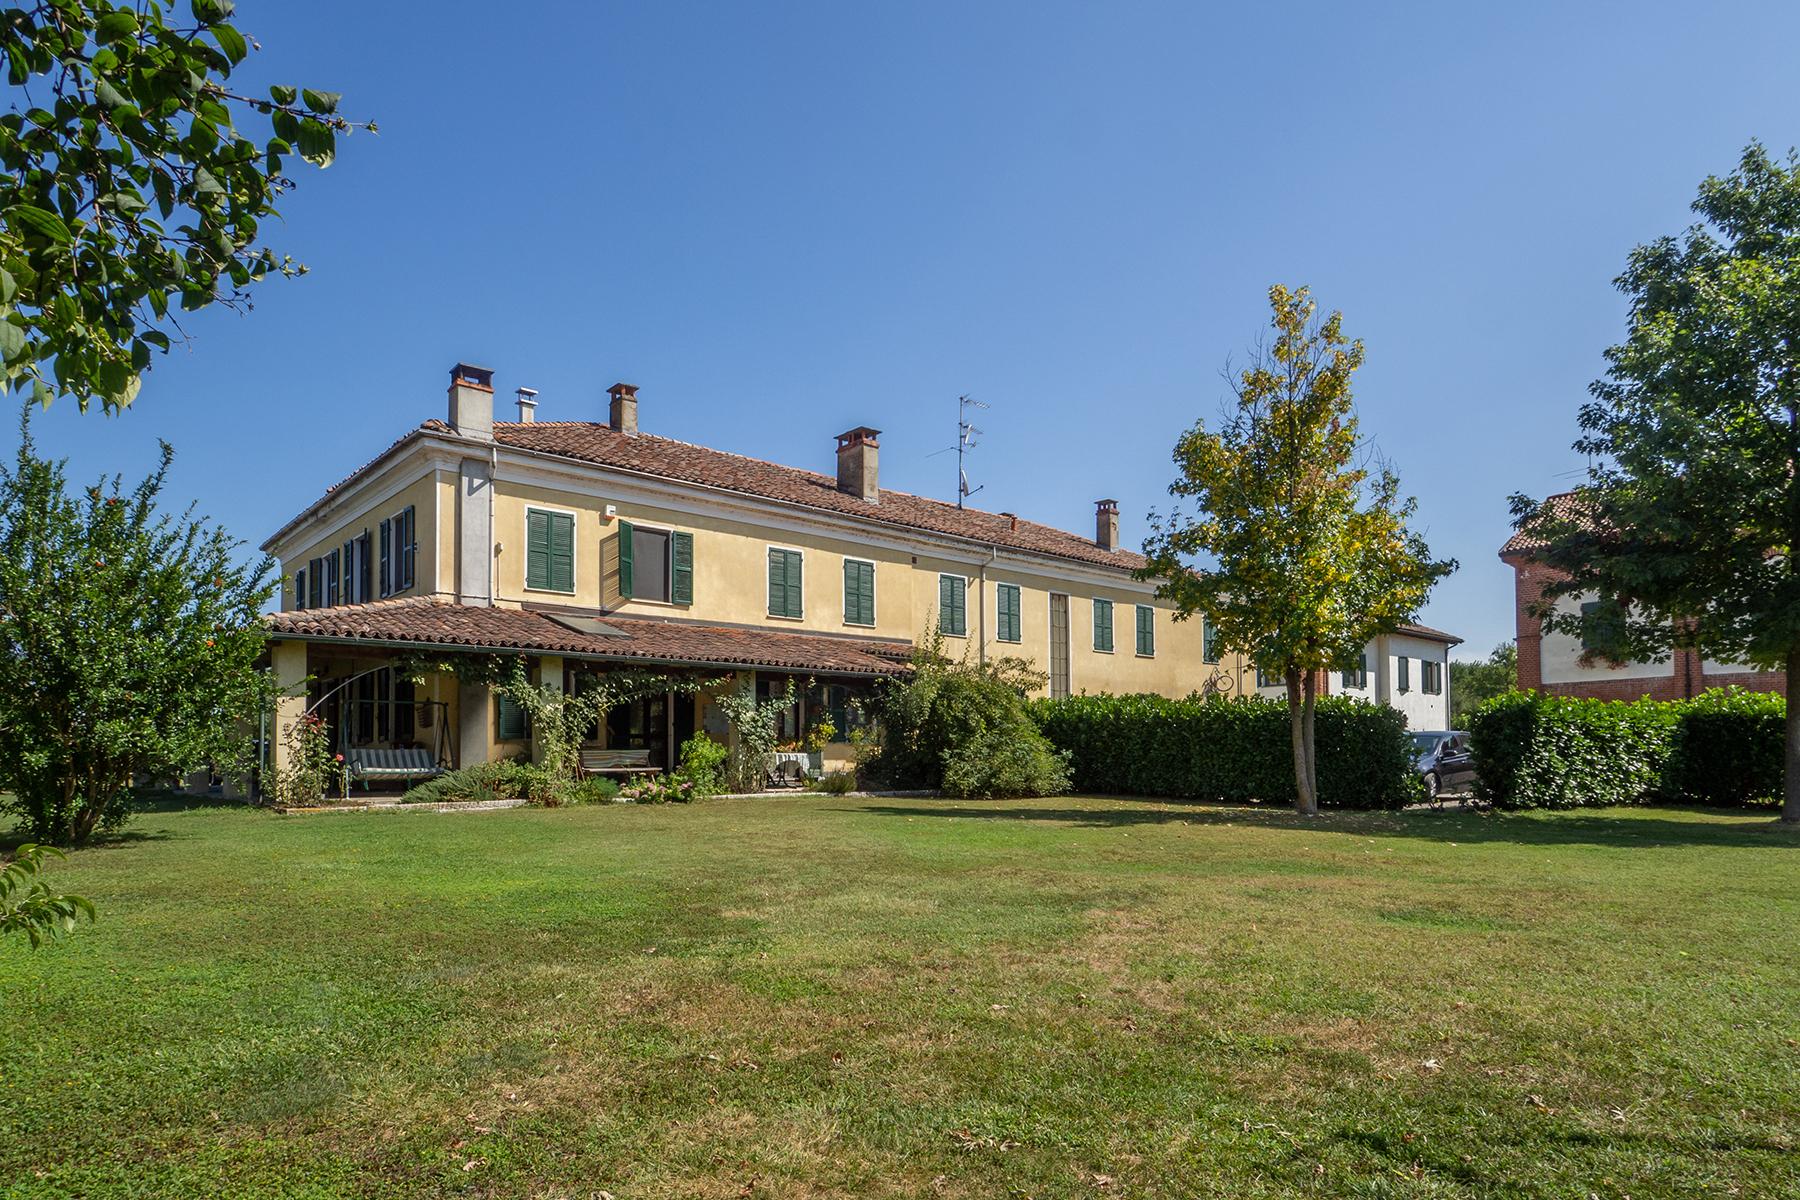 Wonderful estate in Monferrato region - 5